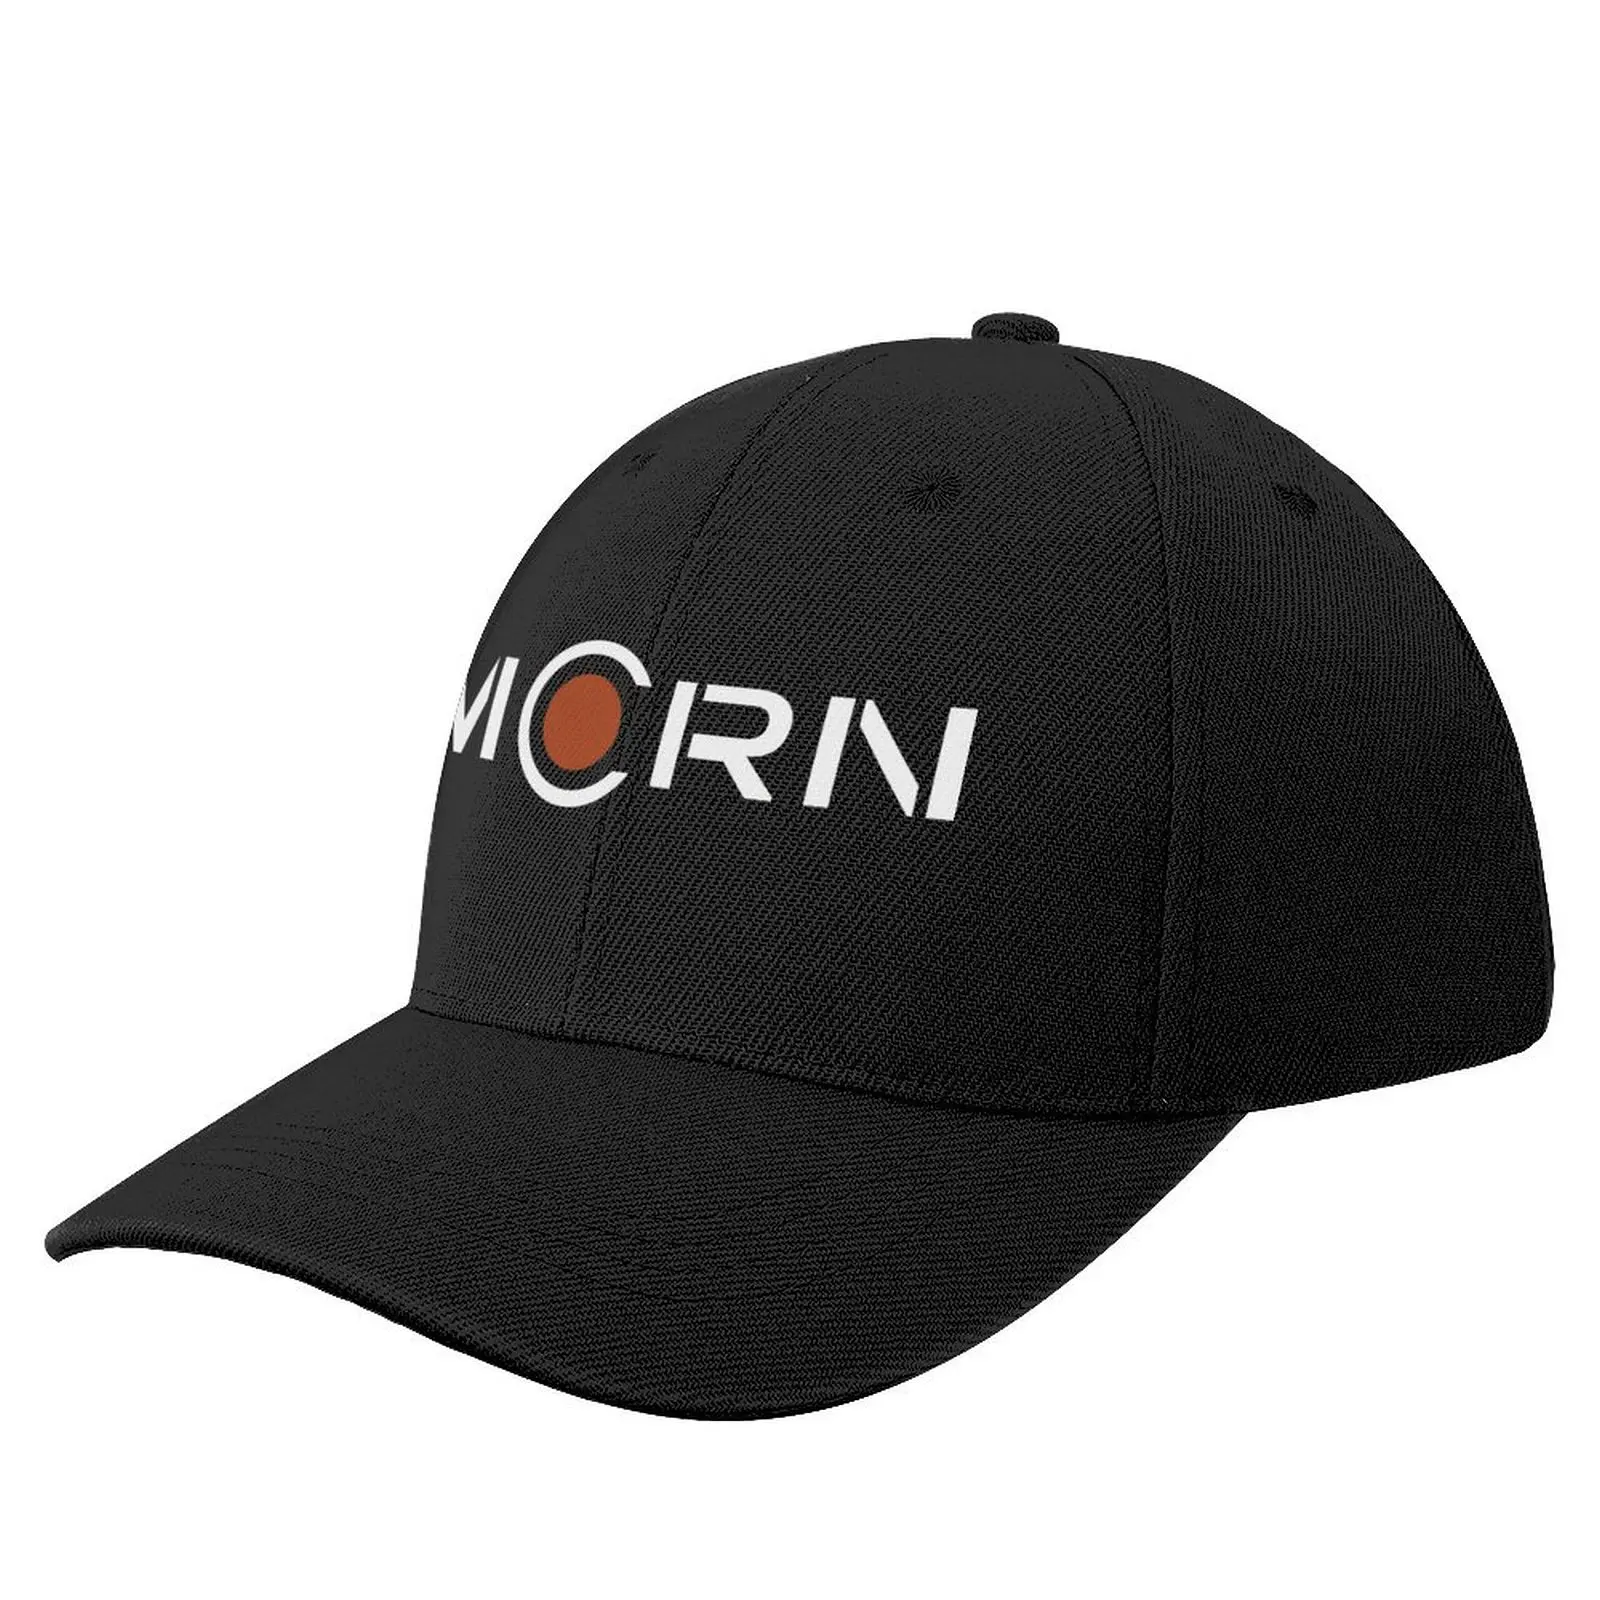 

mars Baseball Cap Designer Hat Uv Protection Solar Hat Beach Ball Cap Hats For Women Men's